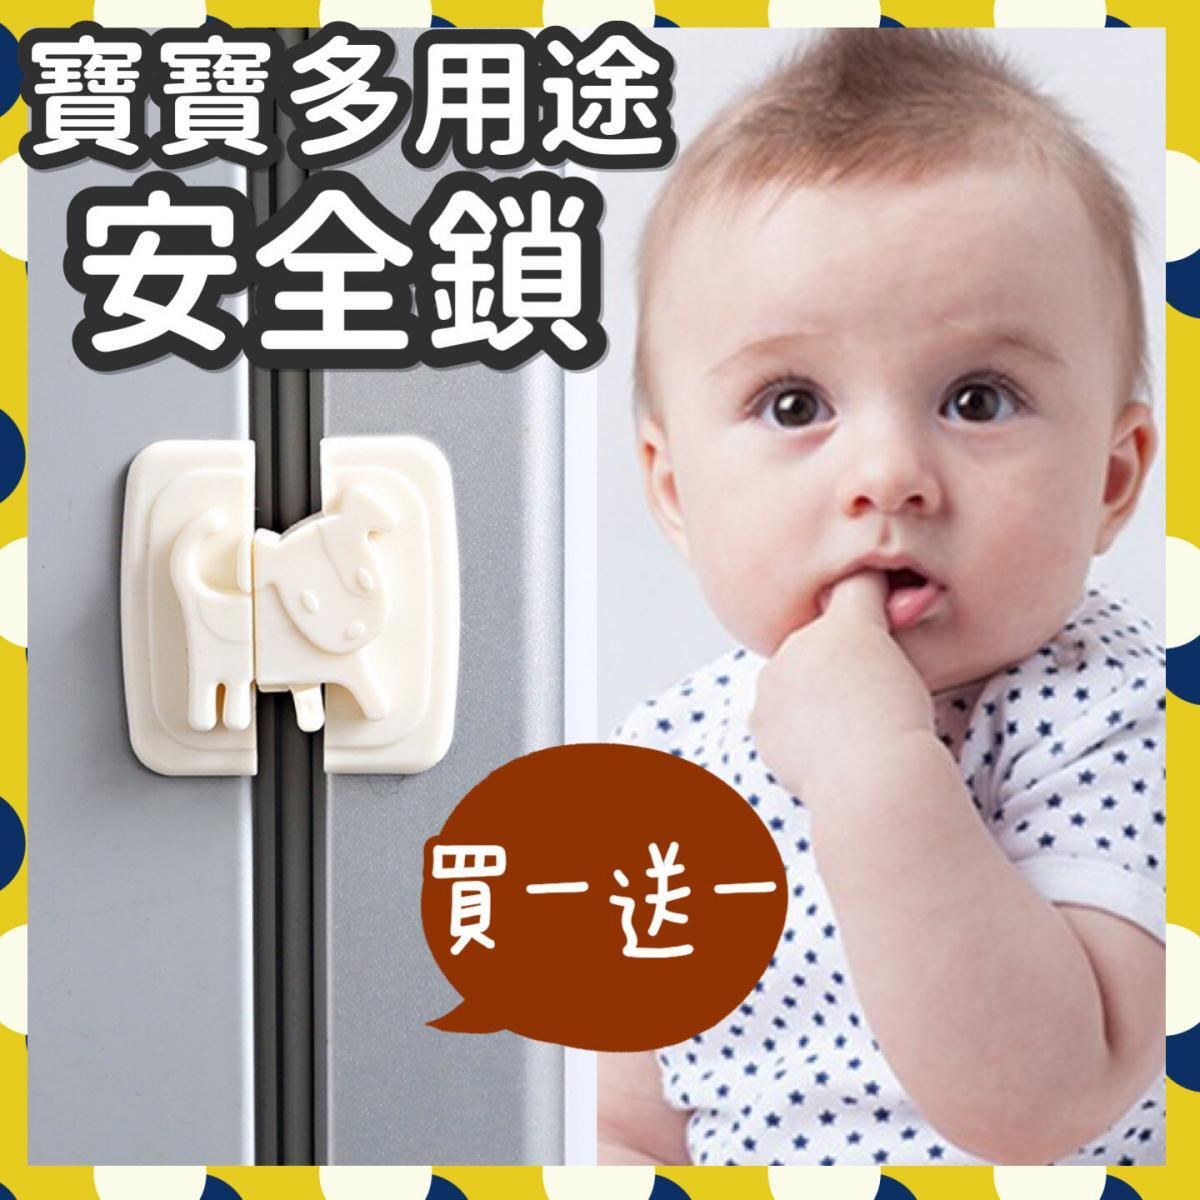 Buy 1 Get 1 Free/2 Baby Multipurpose Safety Lock Drawer Safety Lock Refrigerator Safety Lock Cabinet